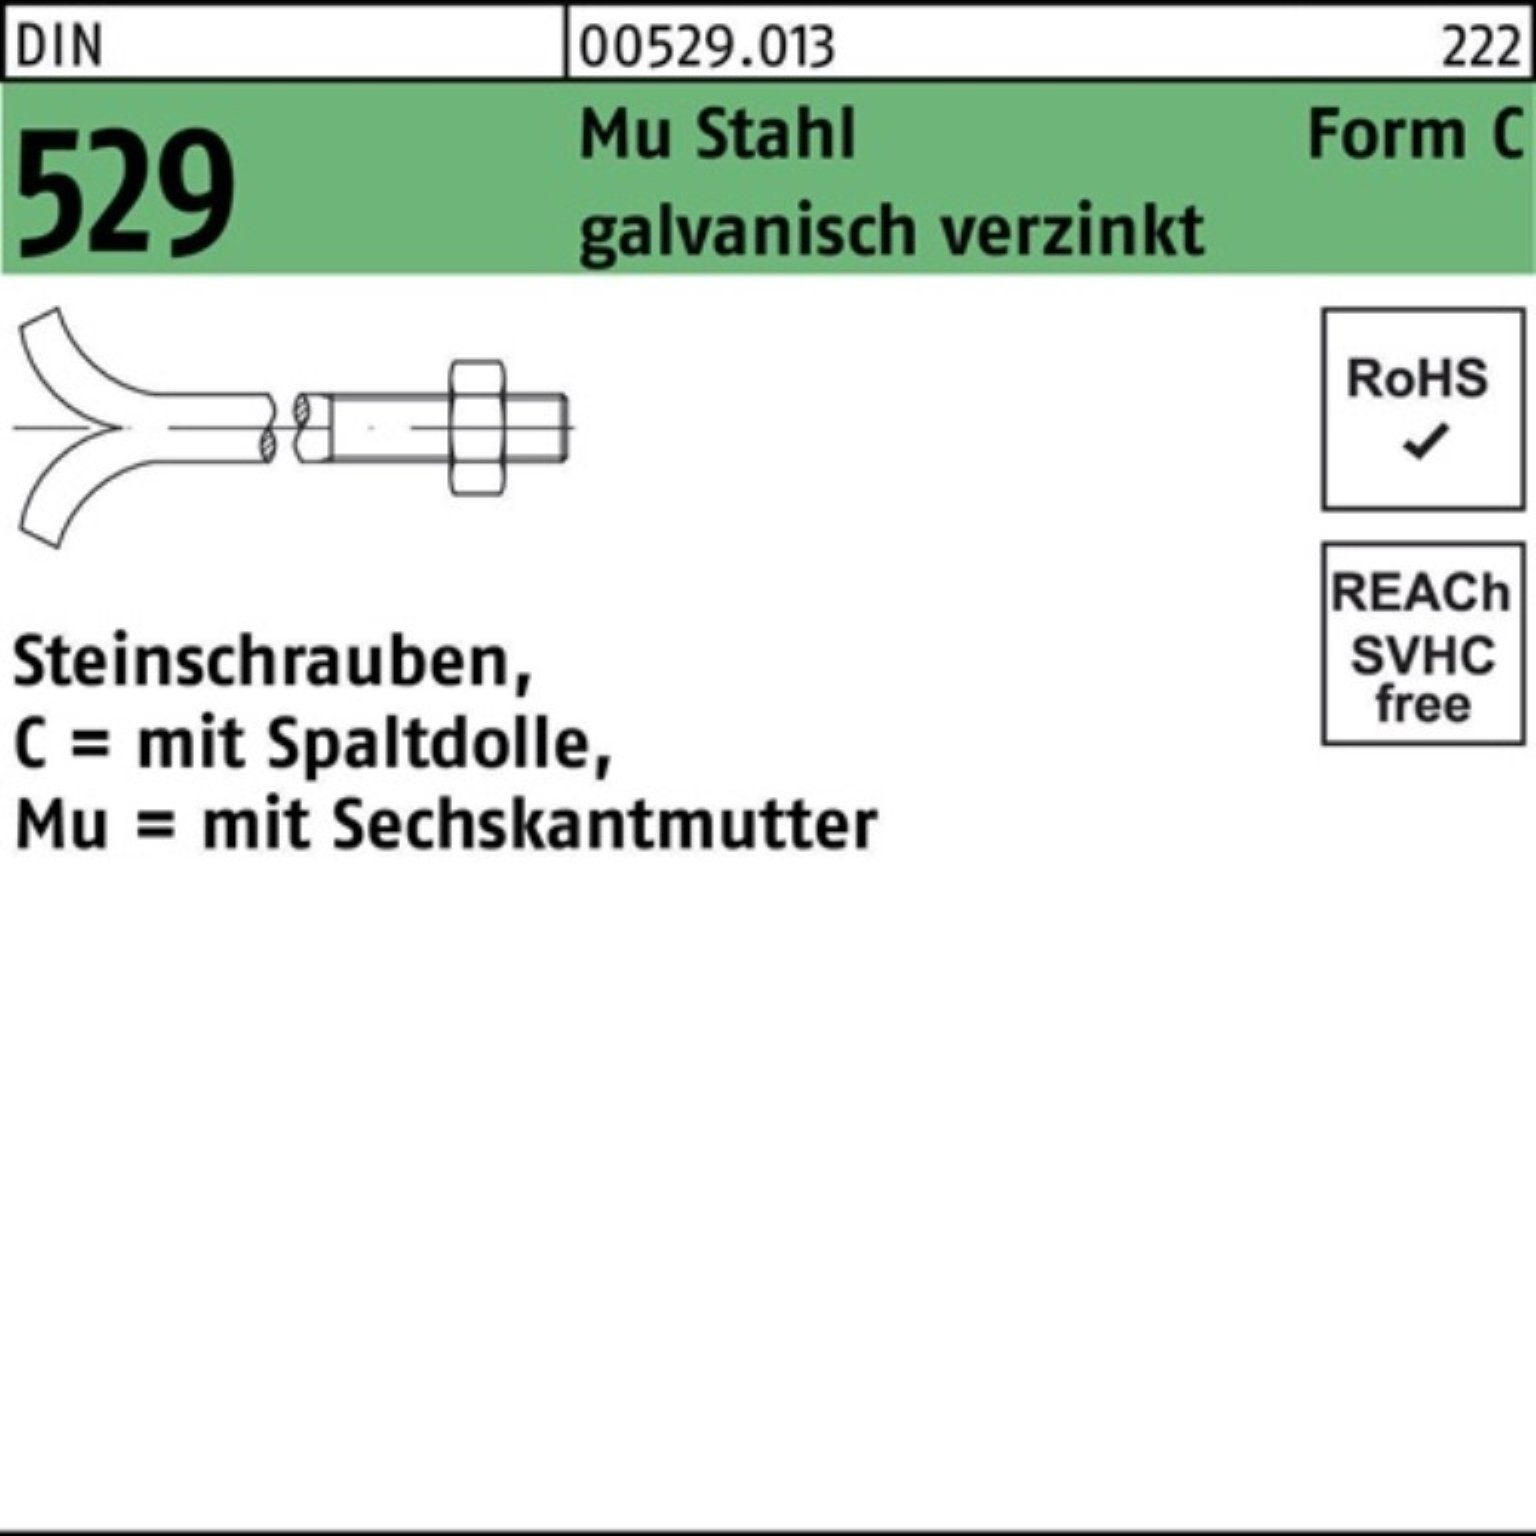 Spaltdolle/6-ktmutter Mu 100er Reyher CM 529 Steinschraube Schraube Pack 3. 12x150 DIN